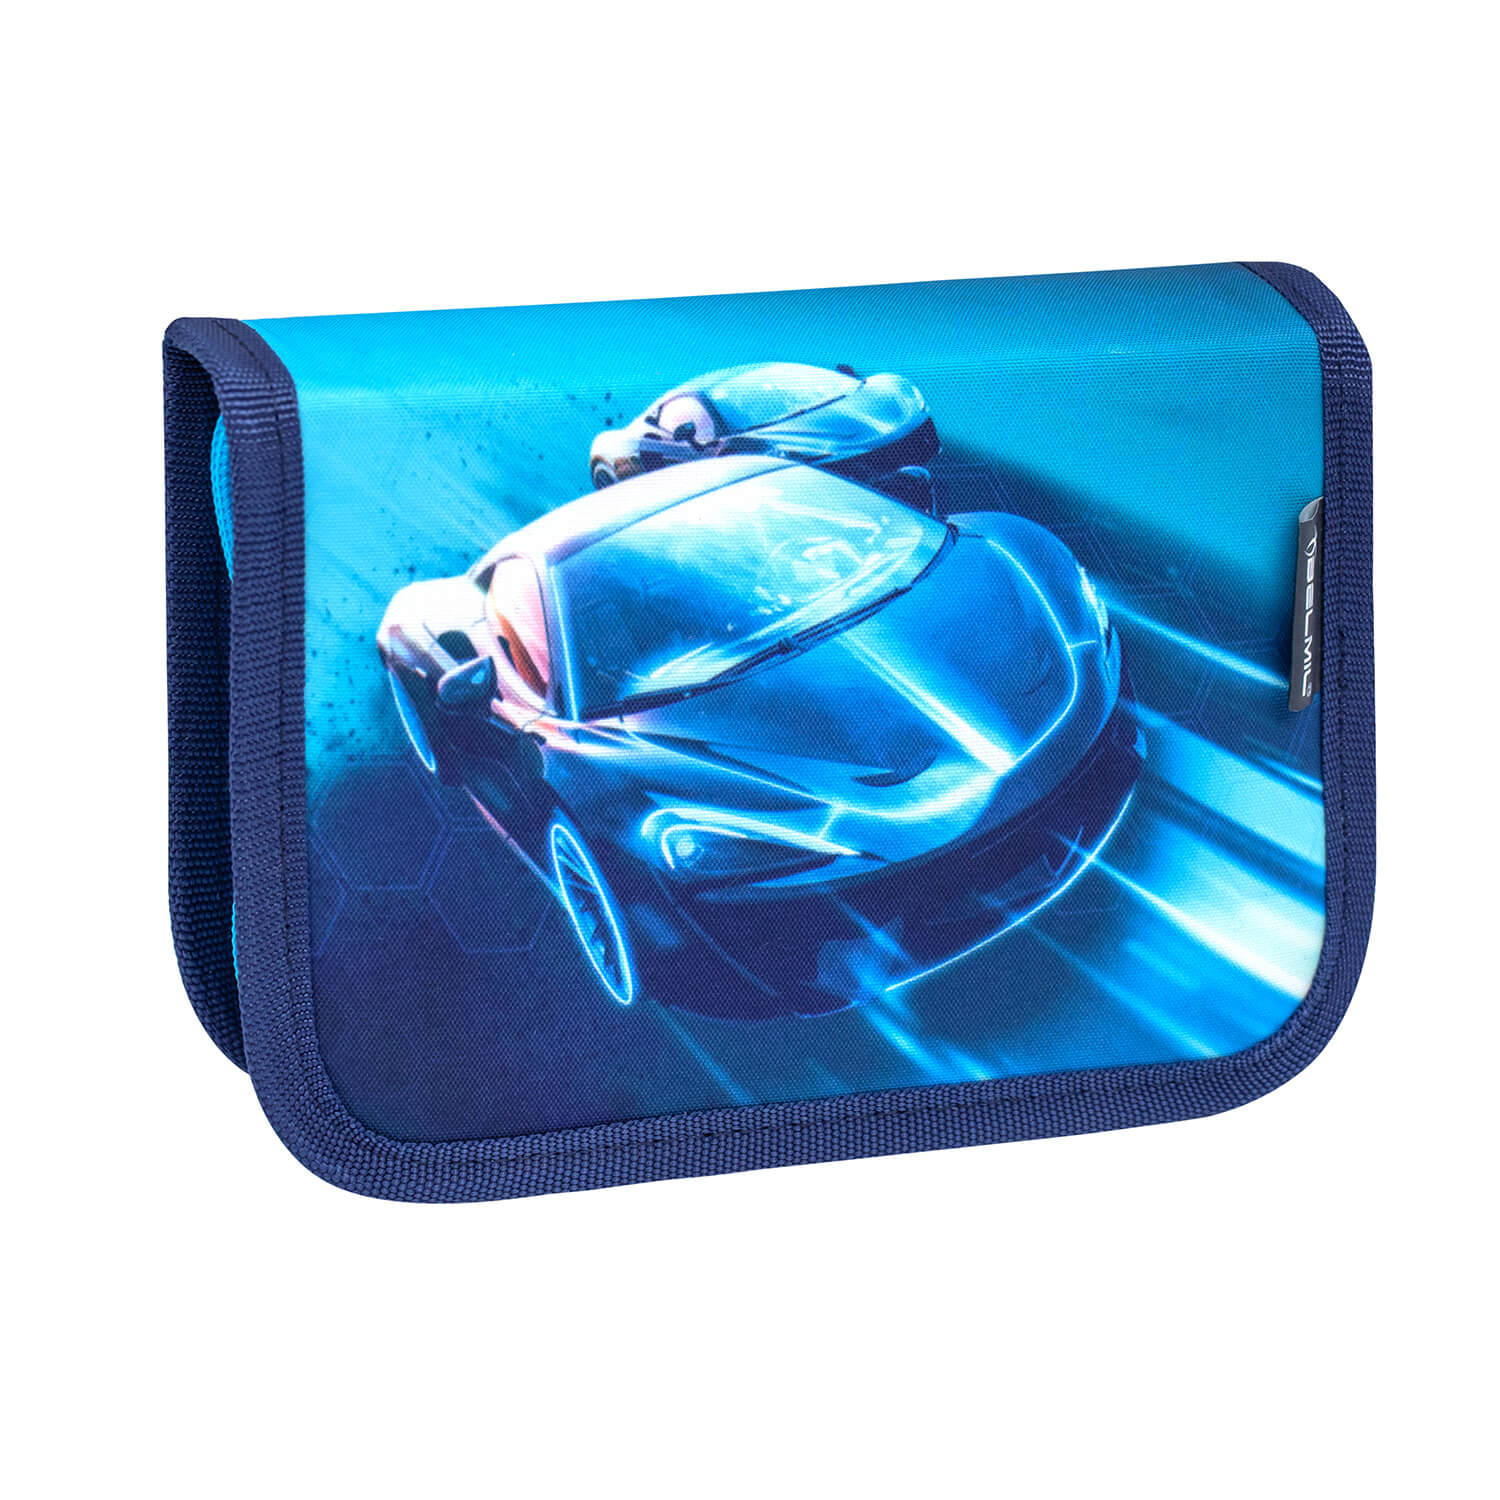 Compact Racing Blue Neon Schulranzen Set 5 tlg. mit GRATIS Brustgurt